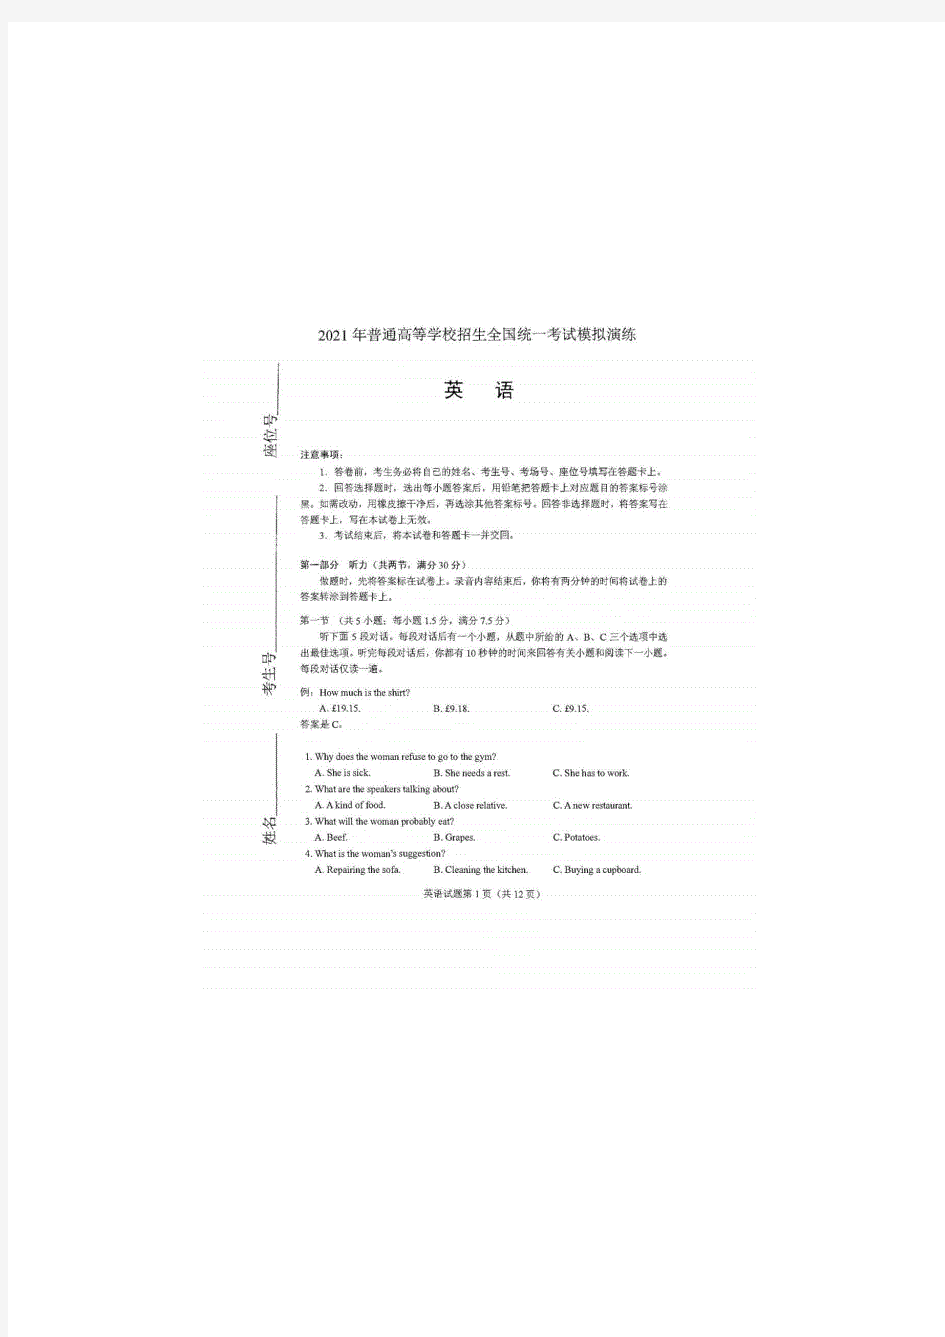 八省联考2021新高考适应性考试英语真题(2021.1.24)